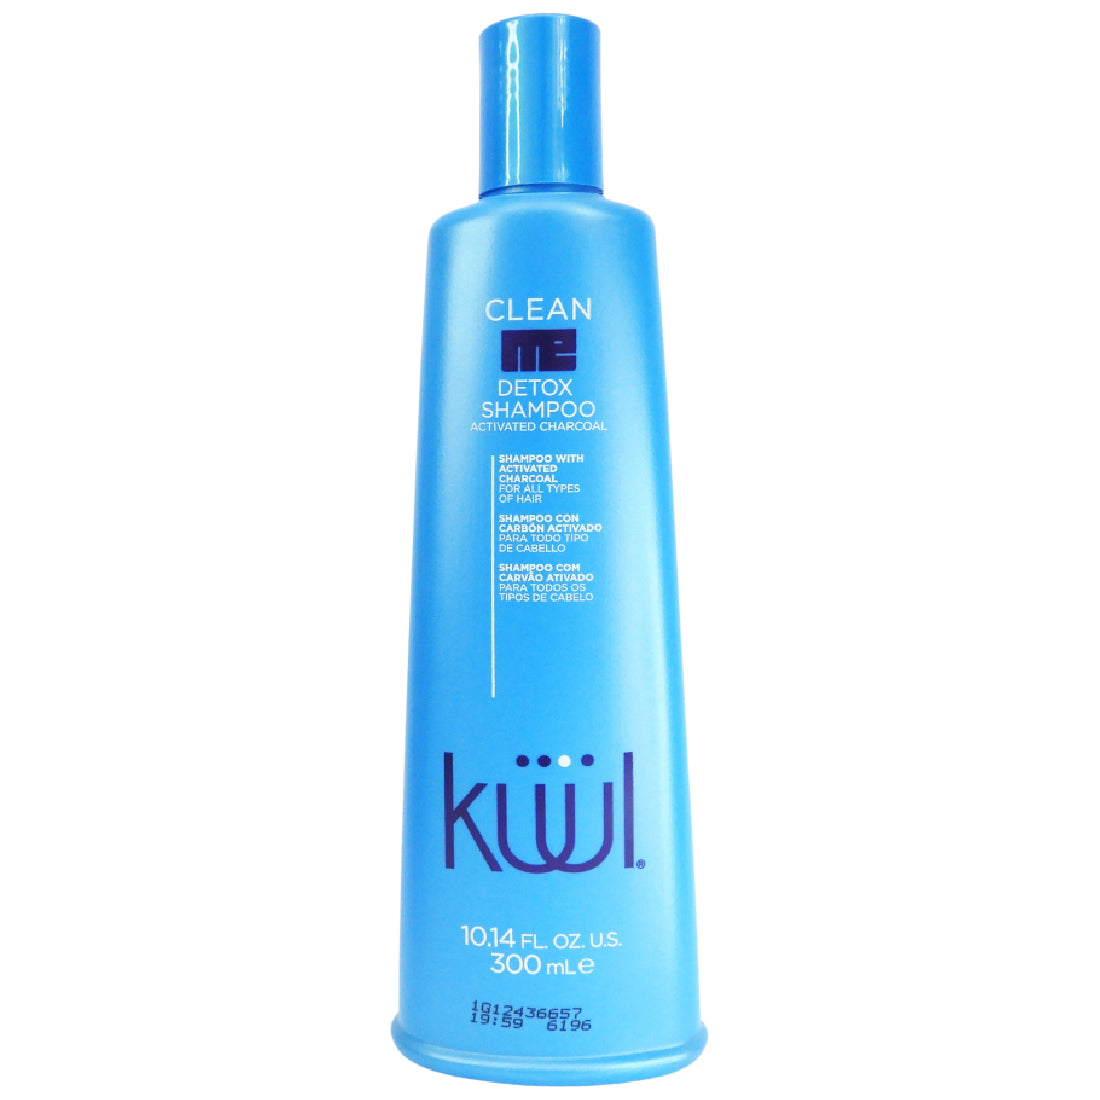 Clean Me Detox  Shampoo 300ml - Con carbón activado para todo tipo de cabello